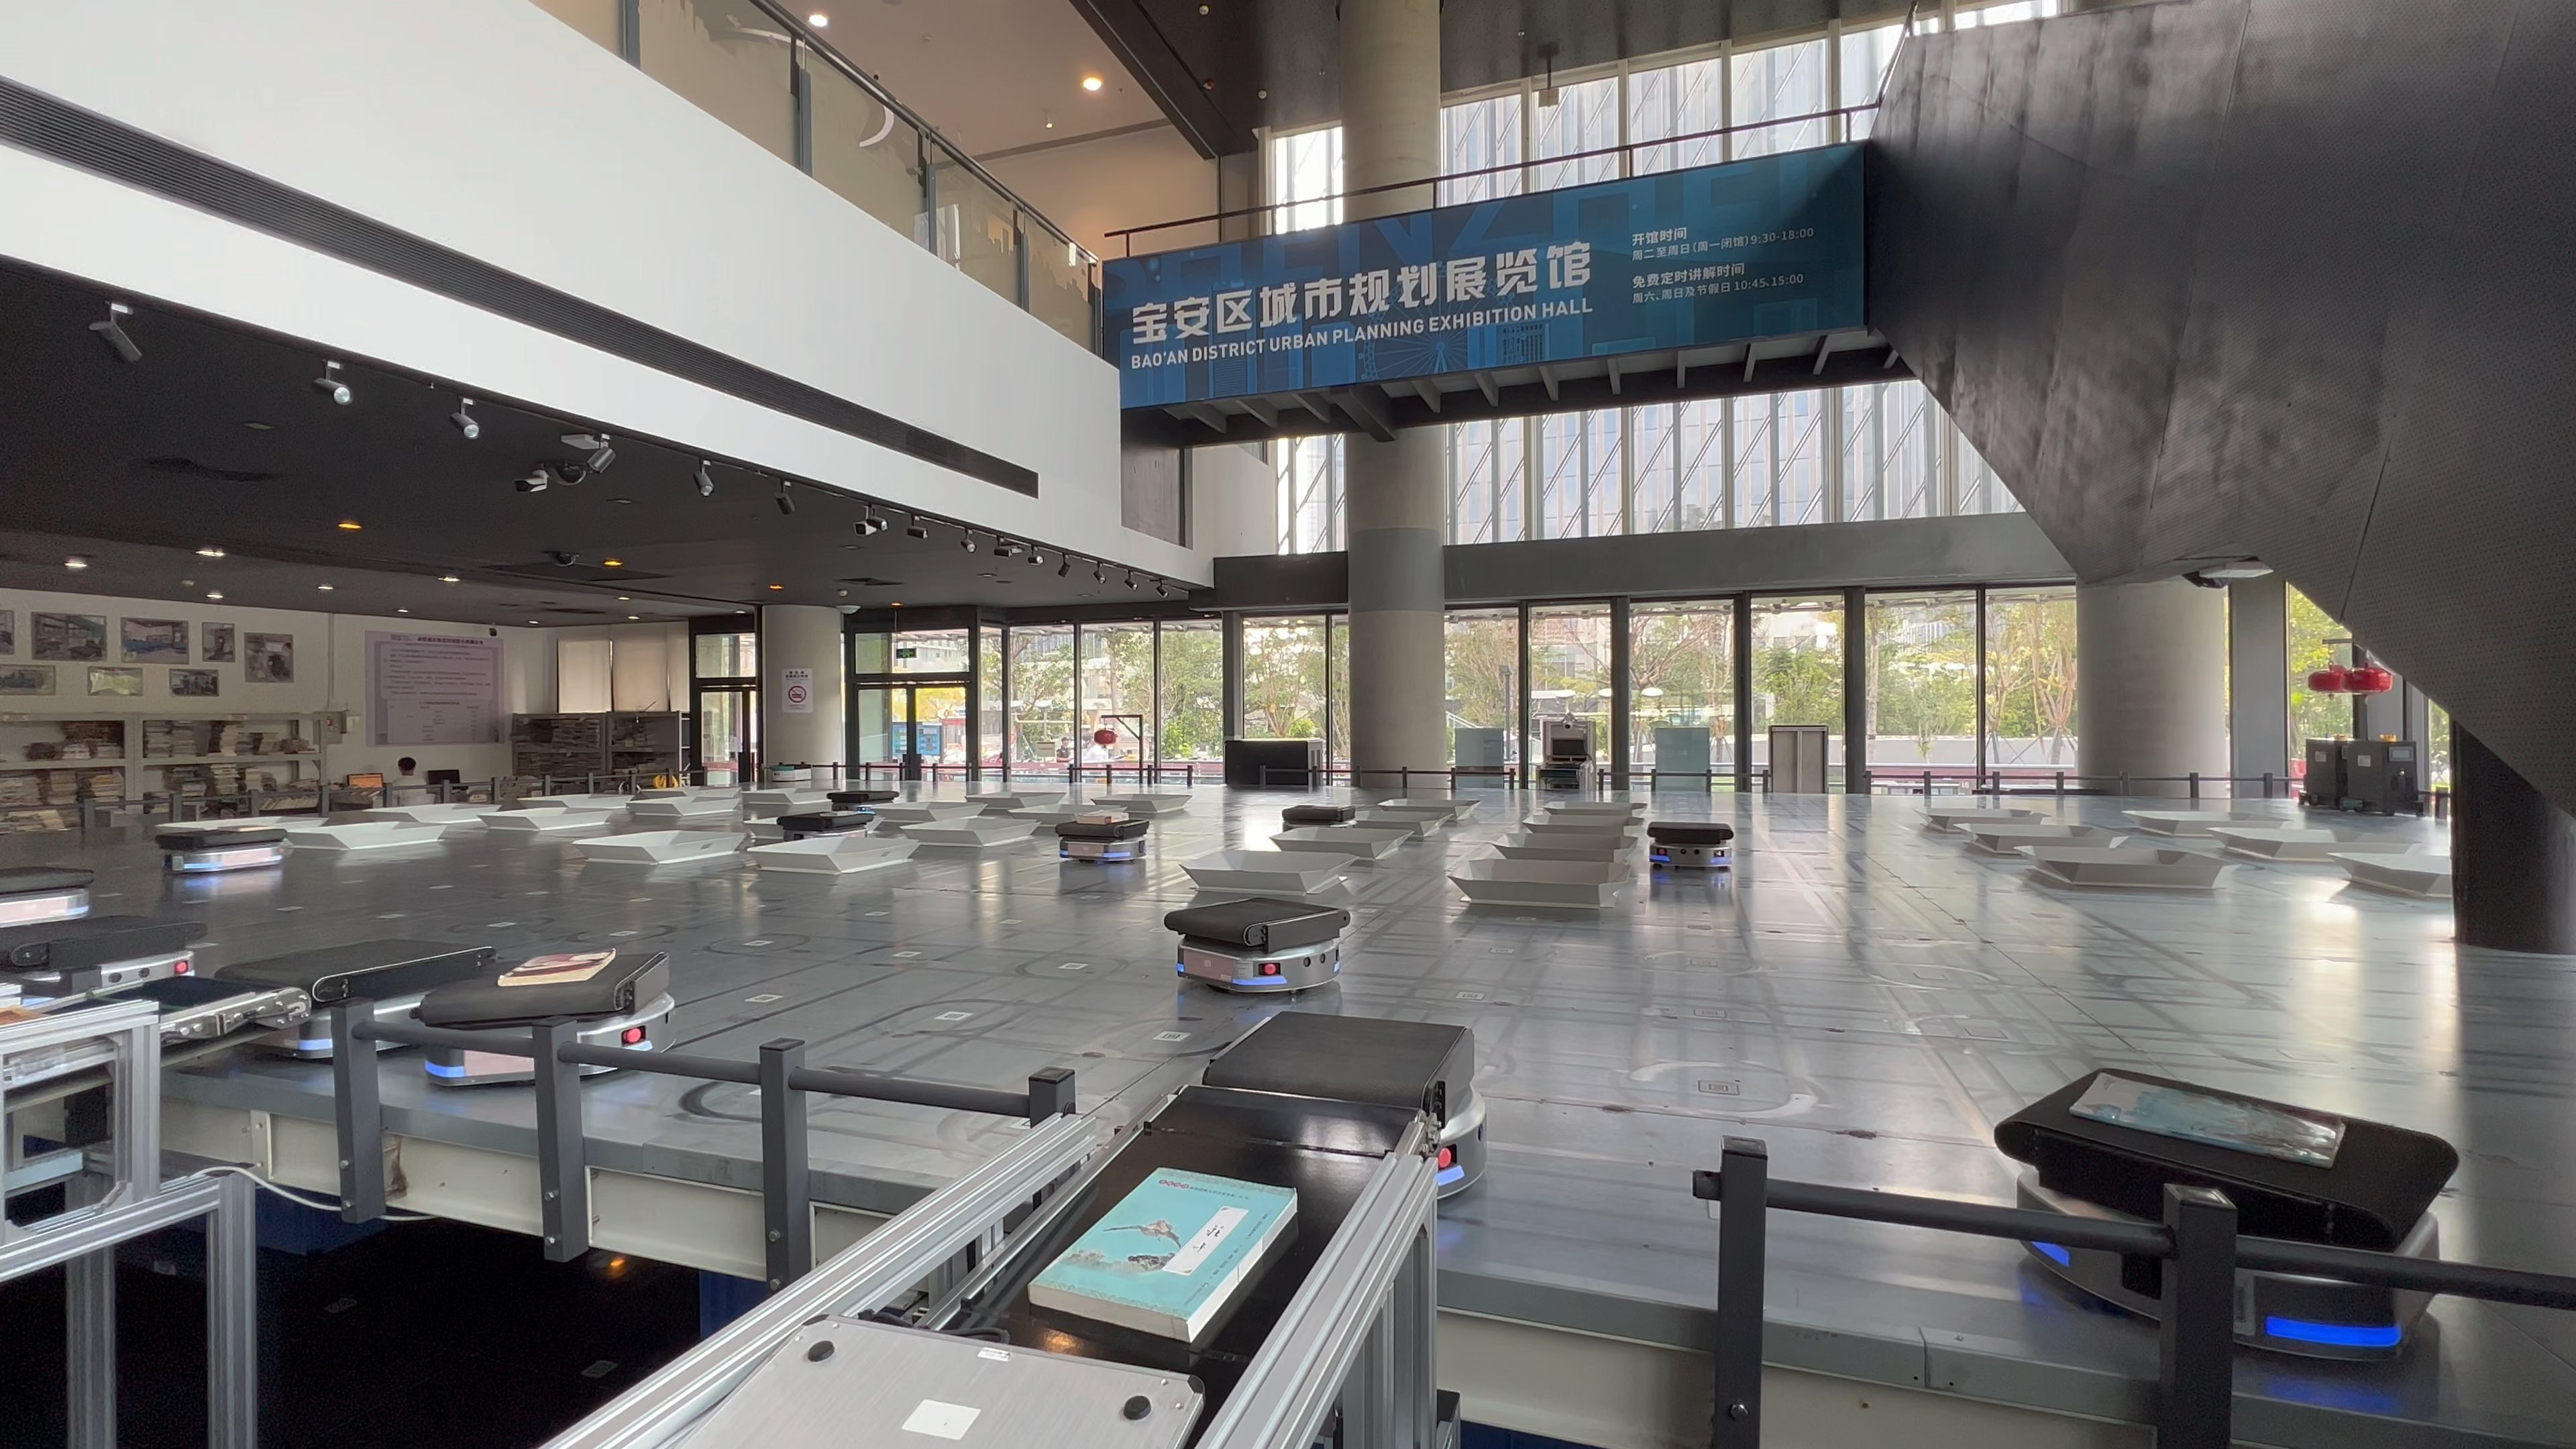 深圳宝安图书馆自助还书机器人,第一次见到,还挺有趣的